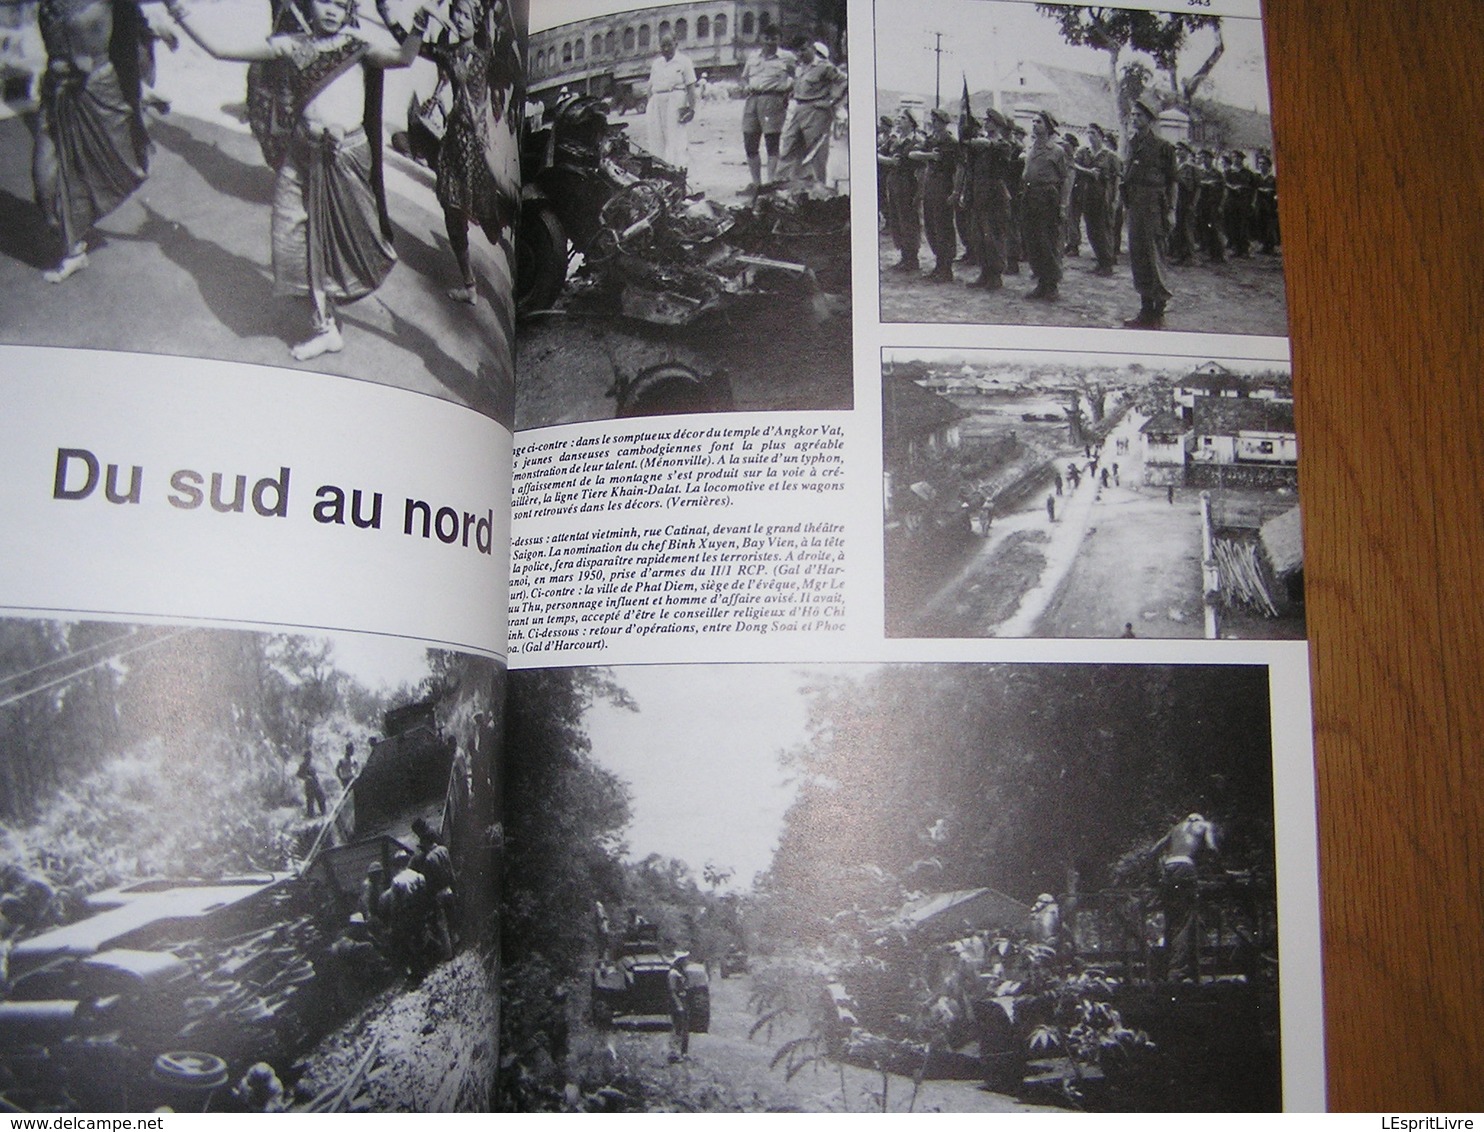 INDOCHINE 1945 1954 4 Le Tournant Laos Vietminh RC 4 Route 2 ème DB Para Commandos Asie Armée Française Parachutiste